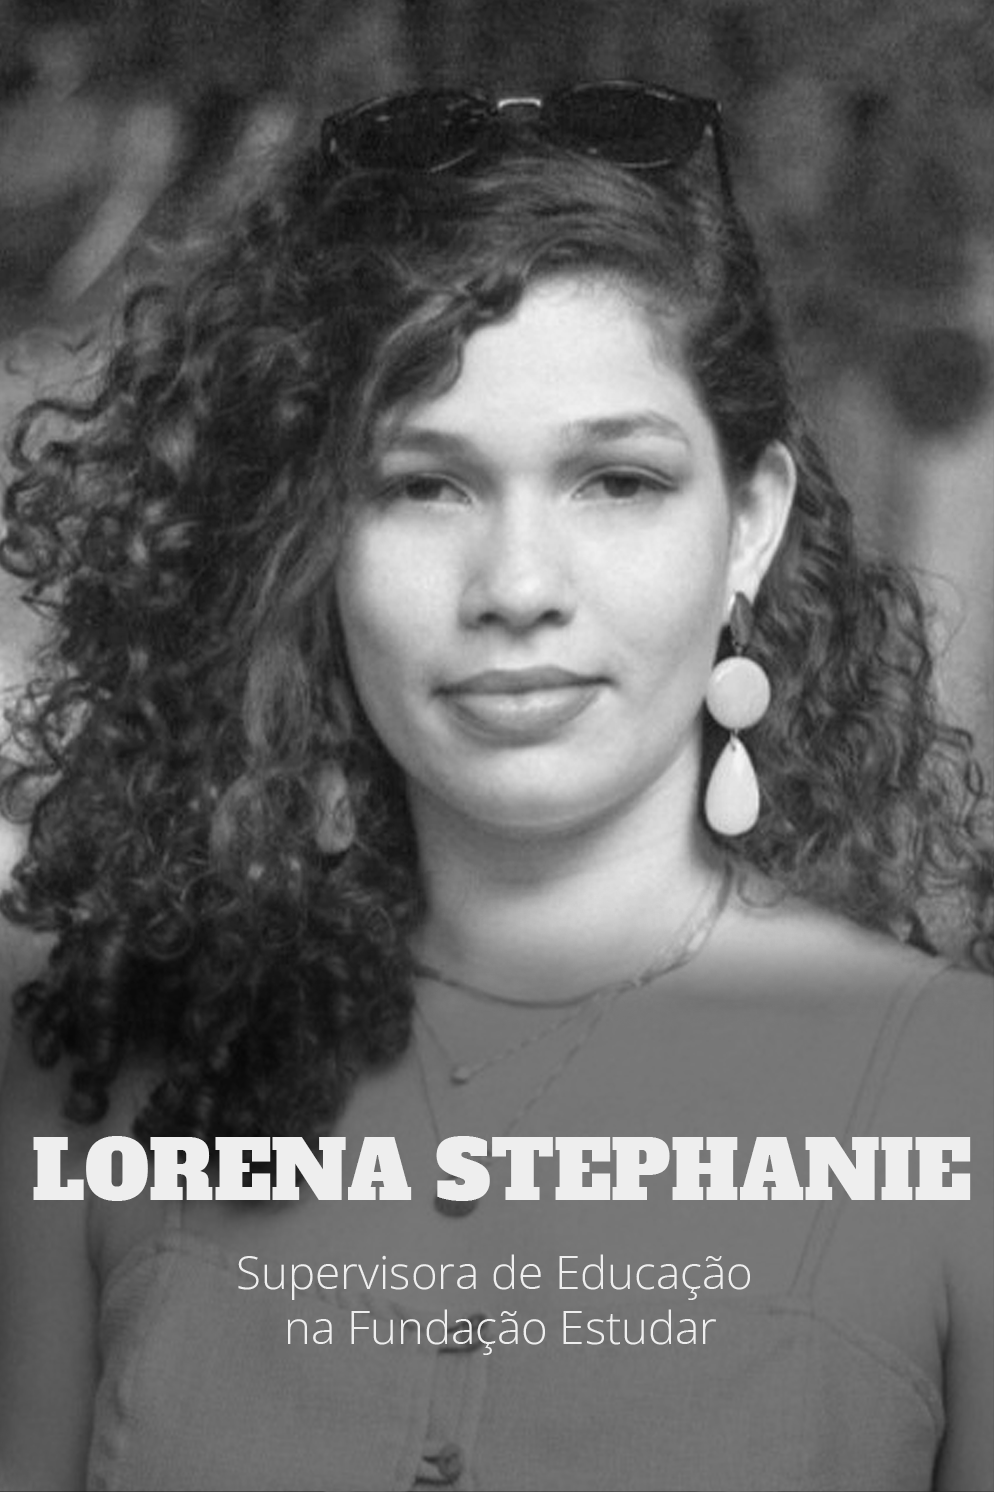 Lorena Stephanie, Facilitadora do Liderança Transformadora